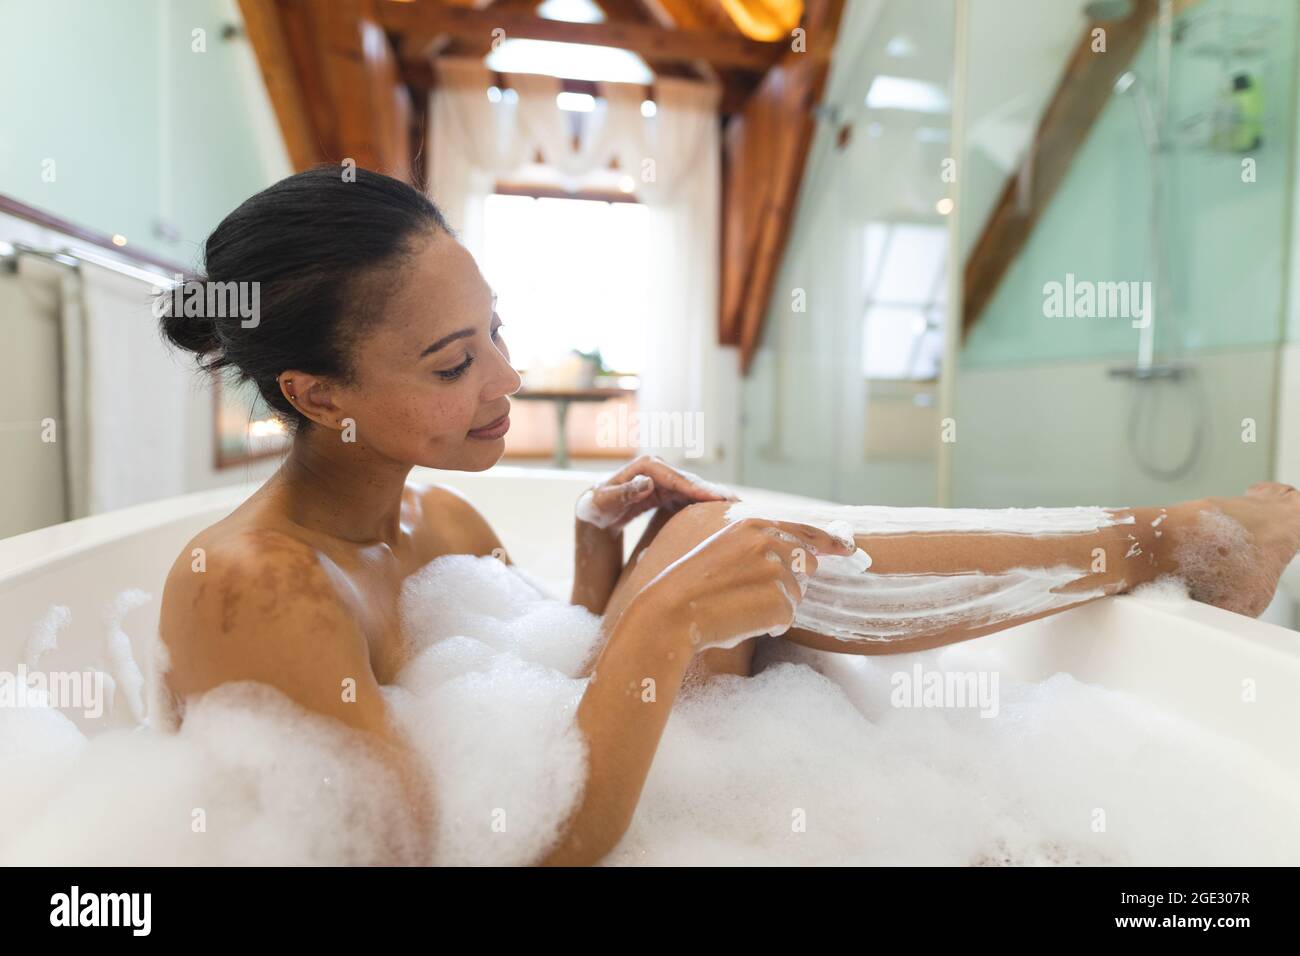 Mujer mixta de la raza en el baño con una bañera y afeitándose las piernas Foto de stock